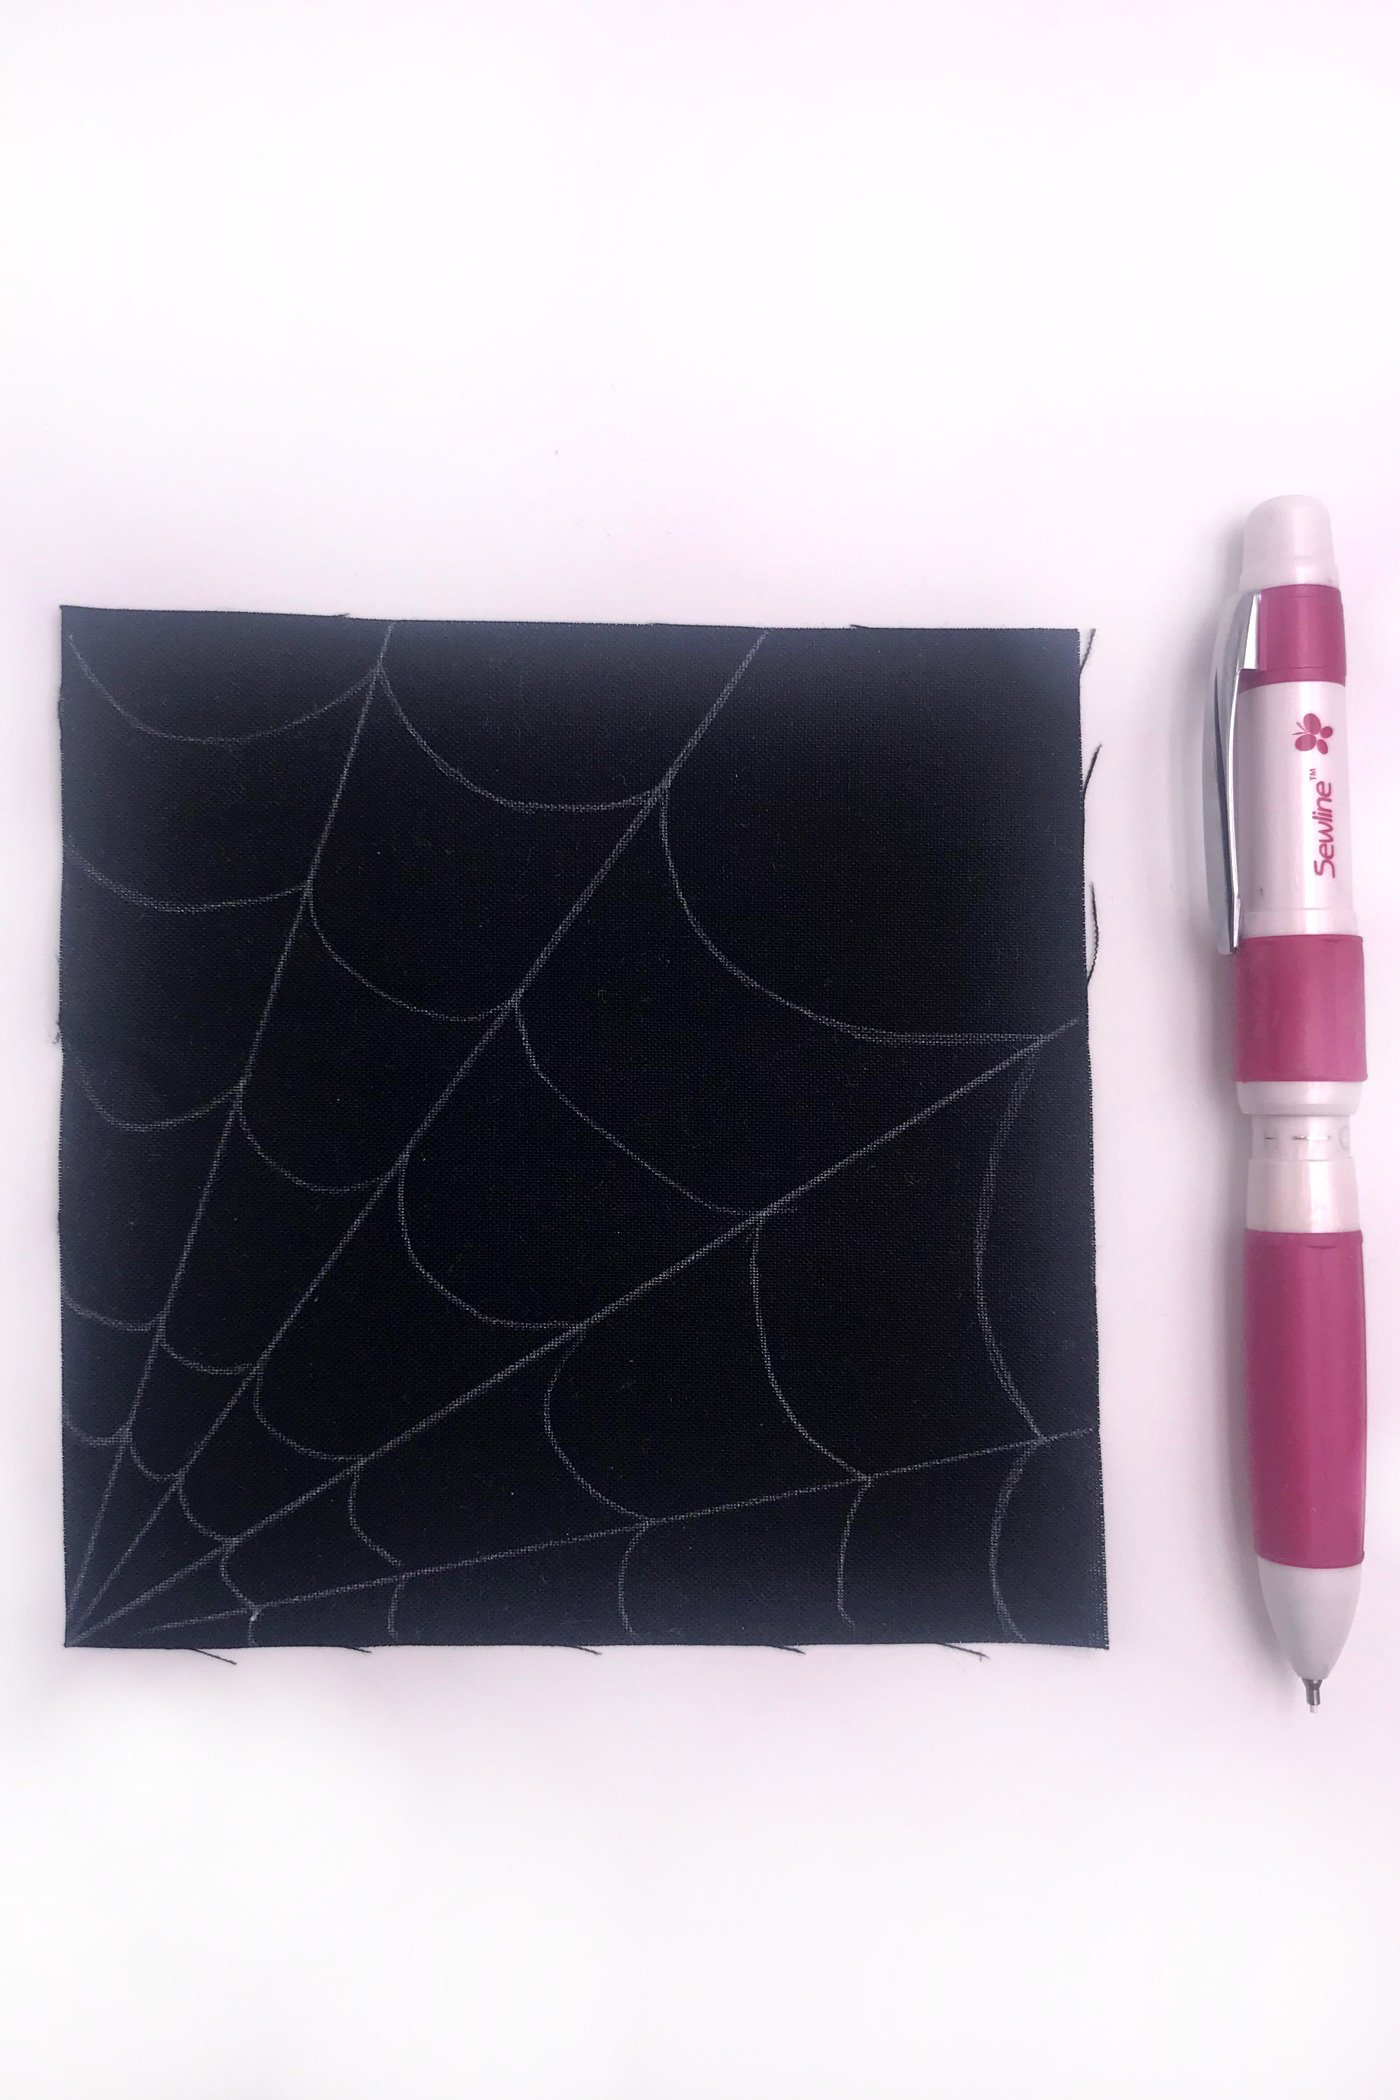 kain hitam dengan jaring laba-laba putih dijahit dengan benang putih di atas meja putih